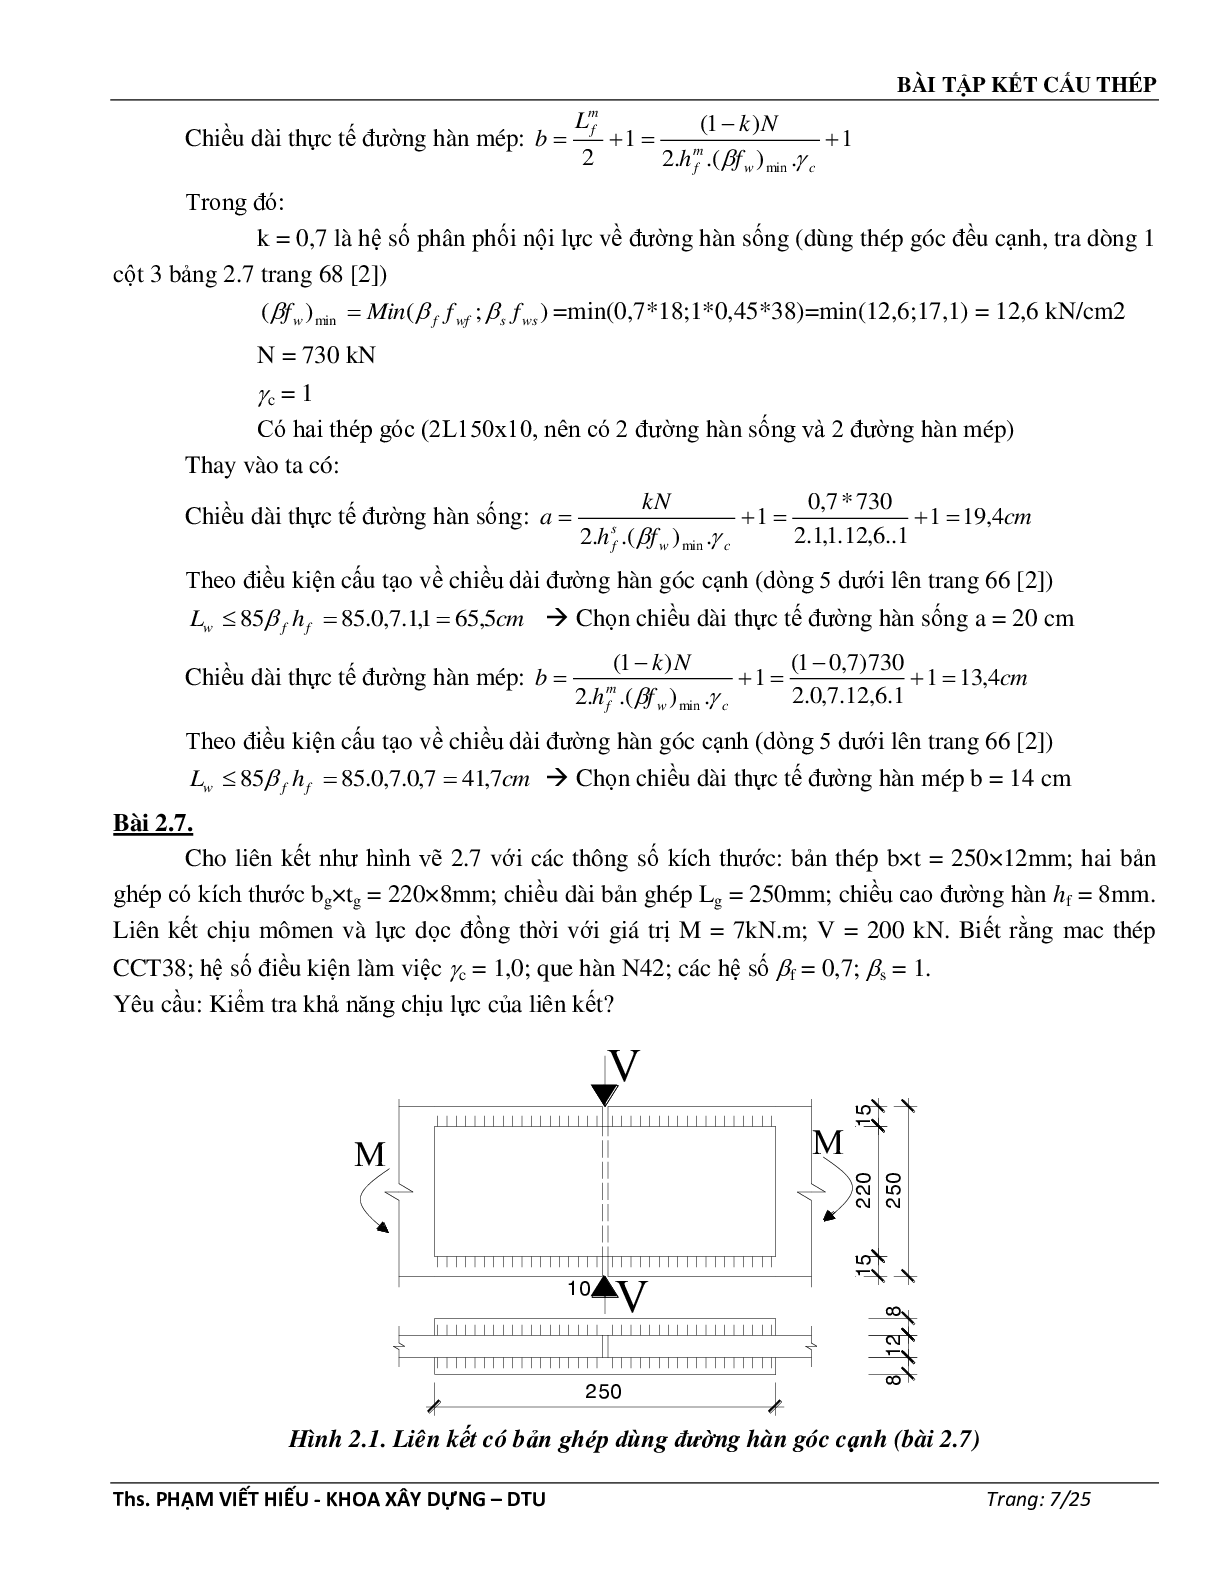 Ngân hàng bài tập môn Kết cấu thép (có đáp án) | Trường Đại học Duy Tân (trang 8)